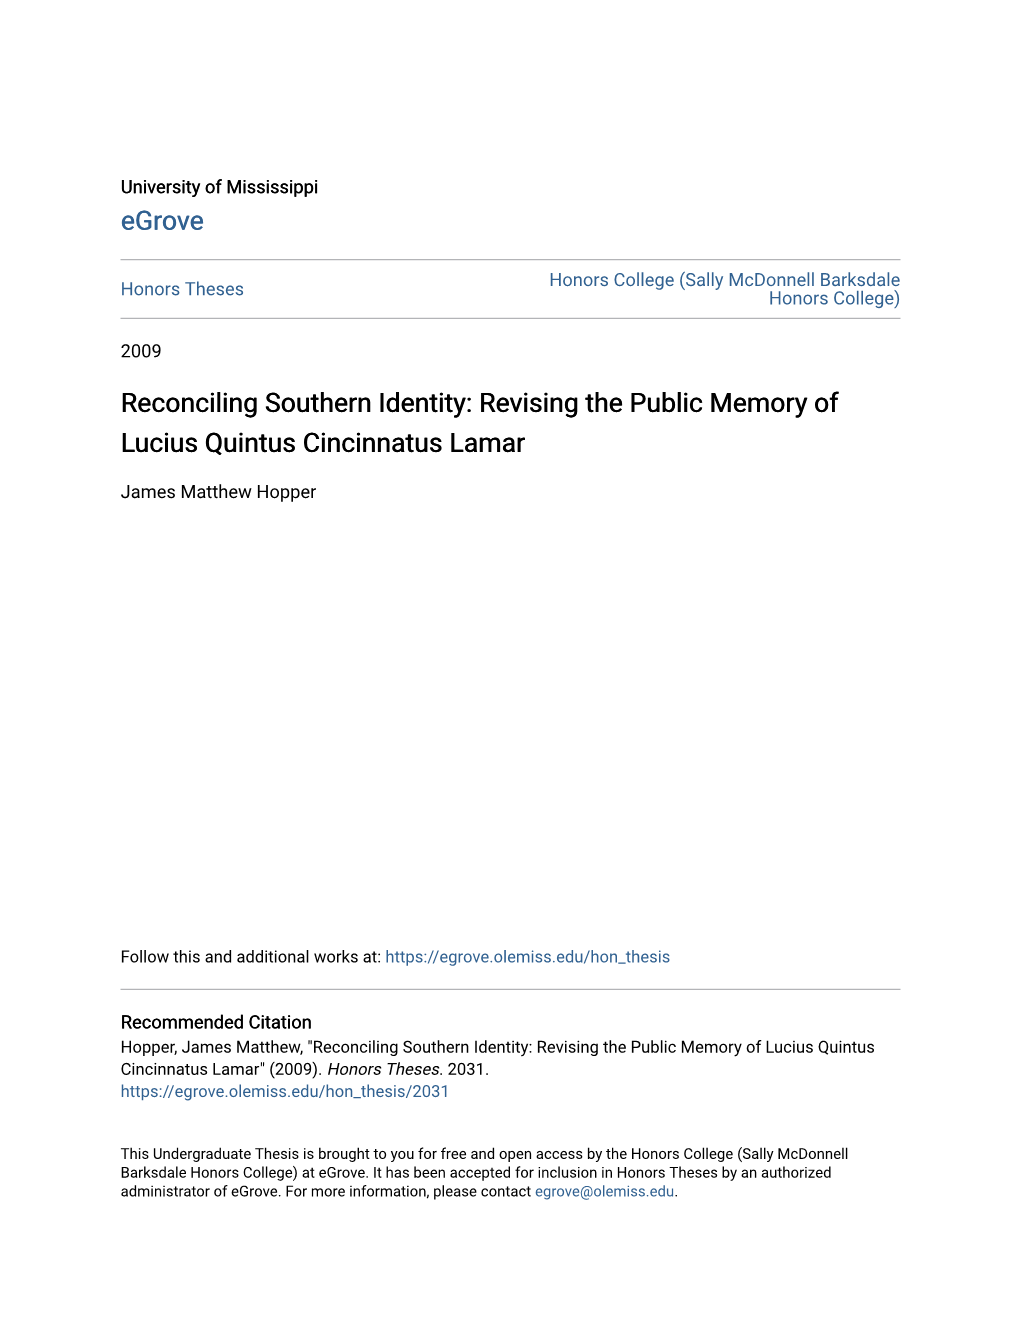 Reconciling Southern Identity: Revising the Public Memory of Lucius Quintus Cincinnatus Lamar